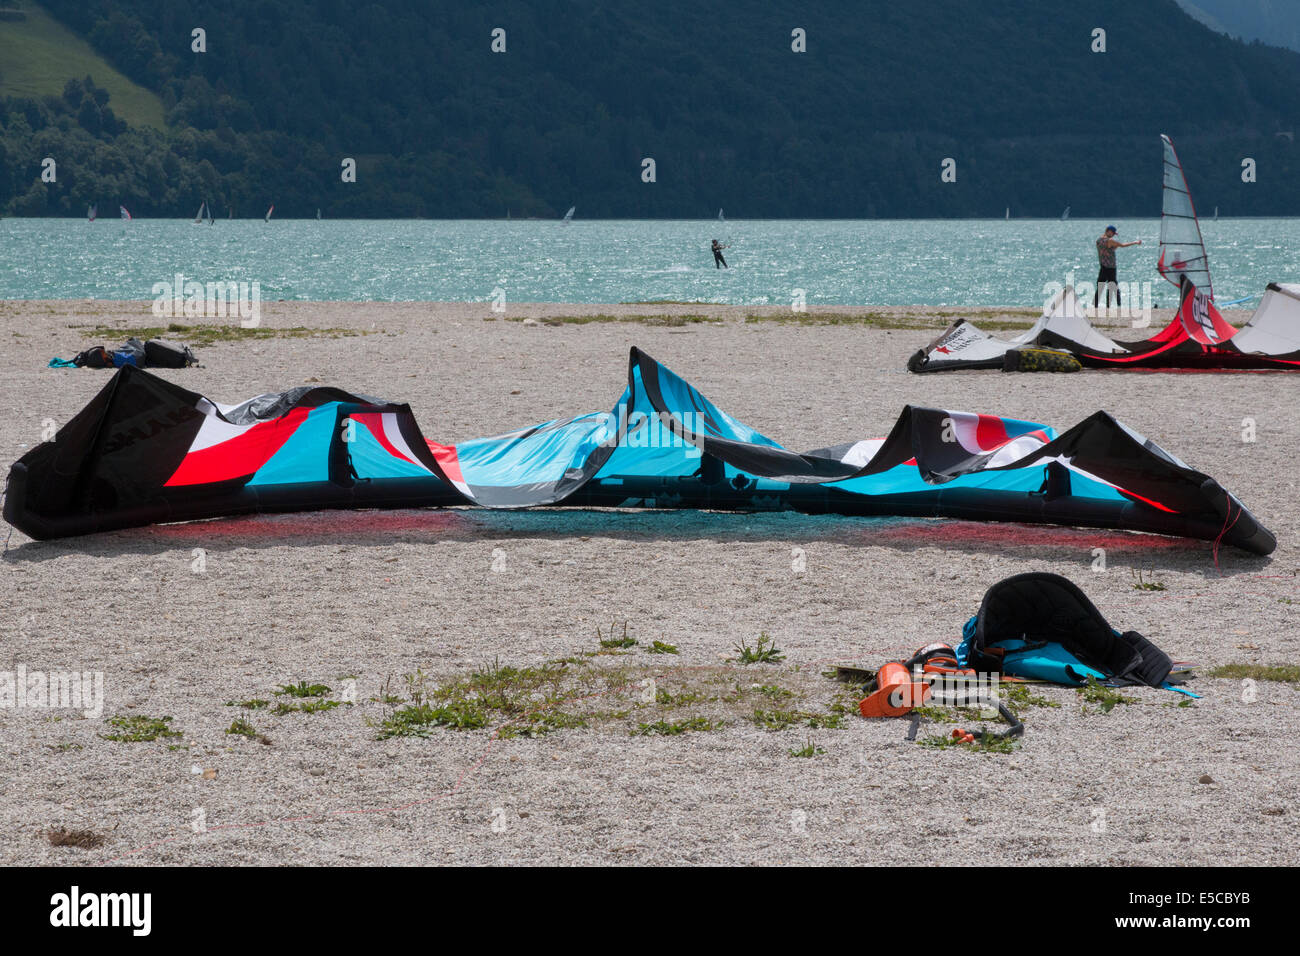 Lac DE SANTA CROCE, ITALIE - 13 juillet 2014 : un cerf-volant est posé sur une plage, dans le lac de Santa Croce Banque D'Images